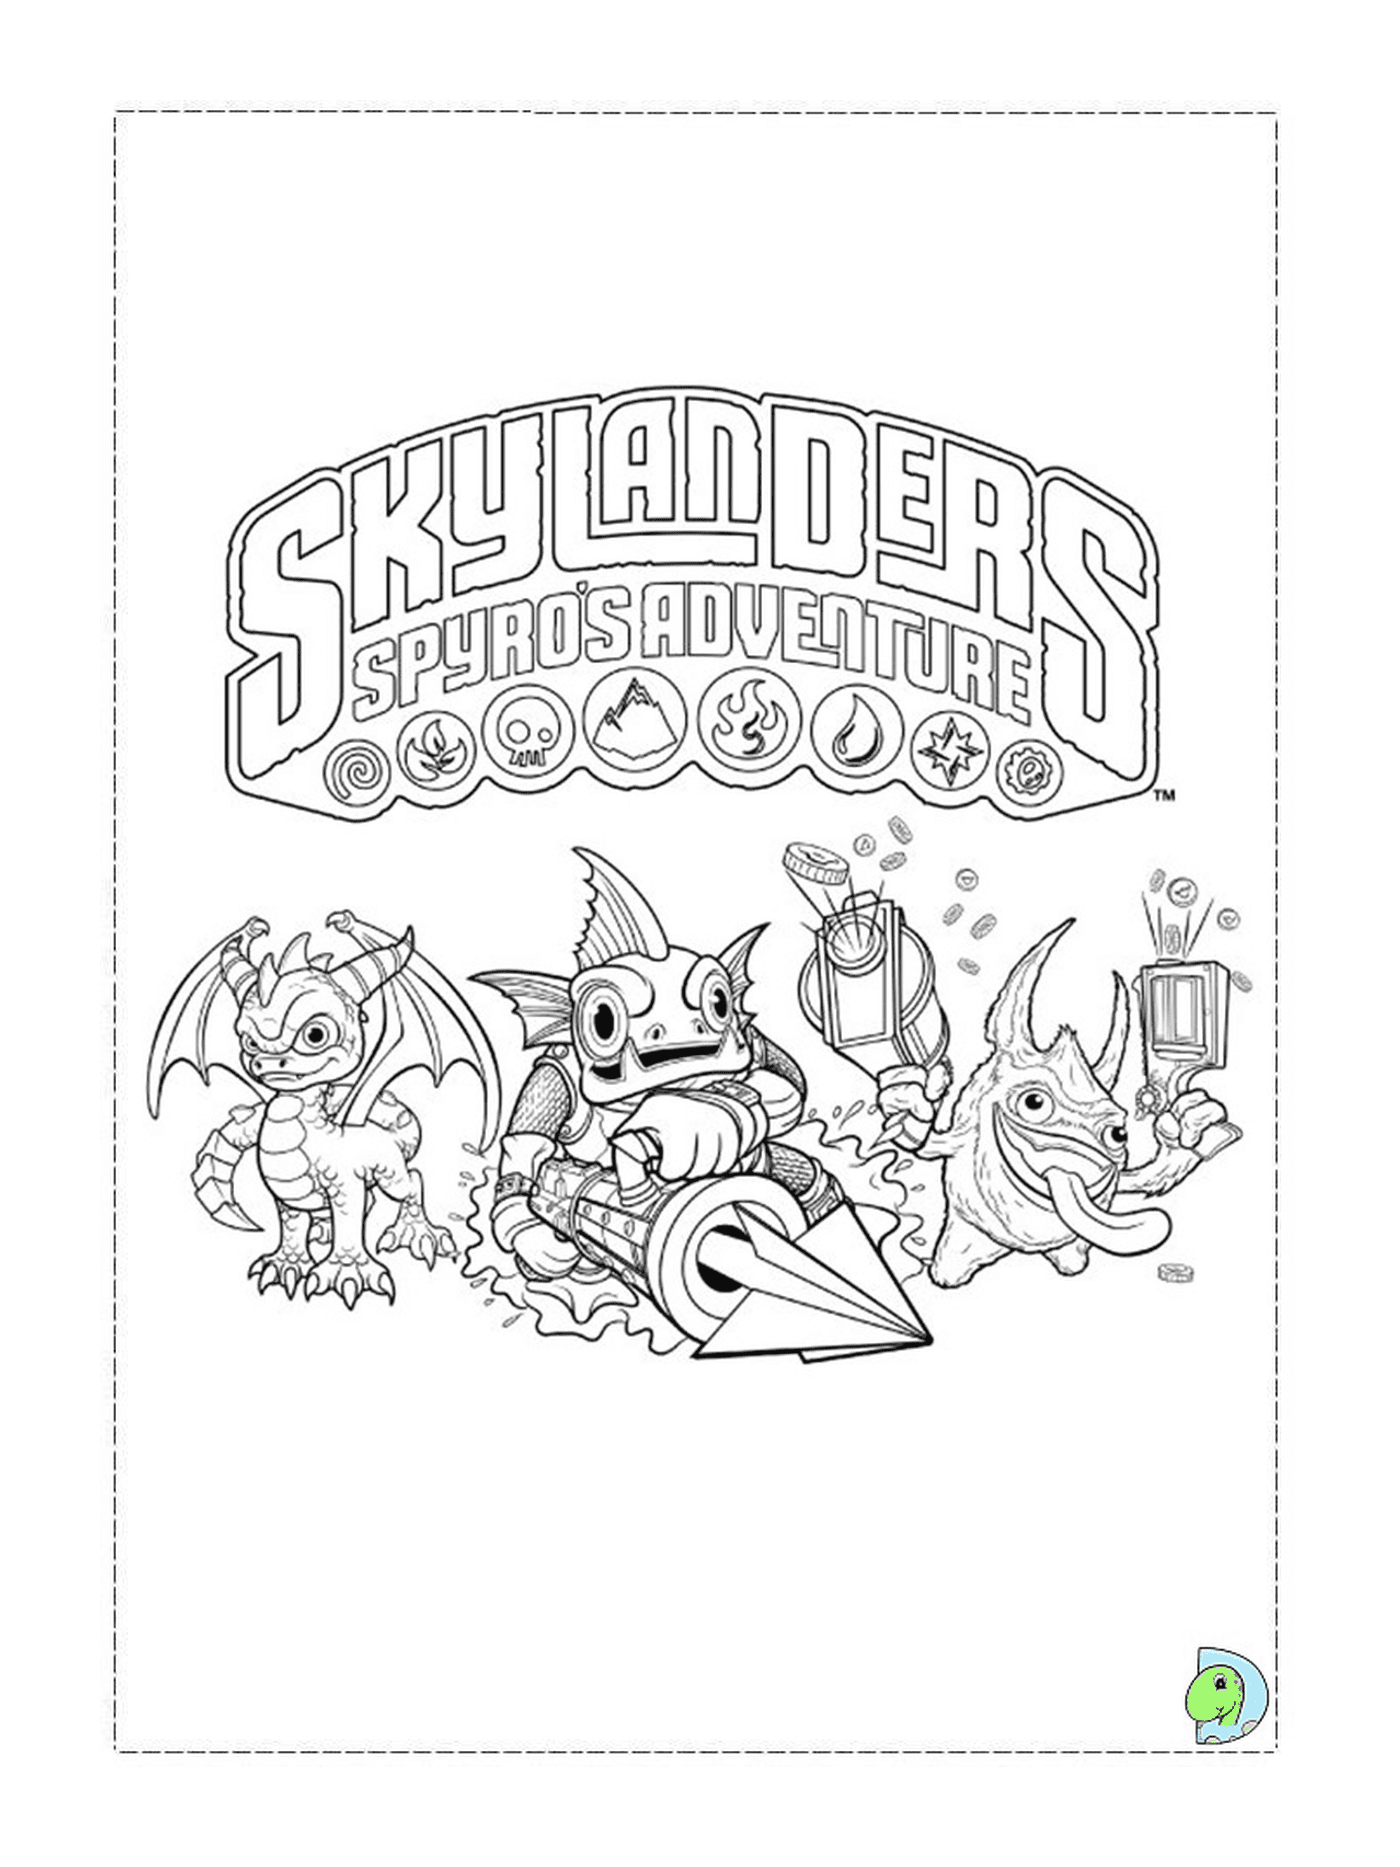   Skylanders Spyro's Adventure 